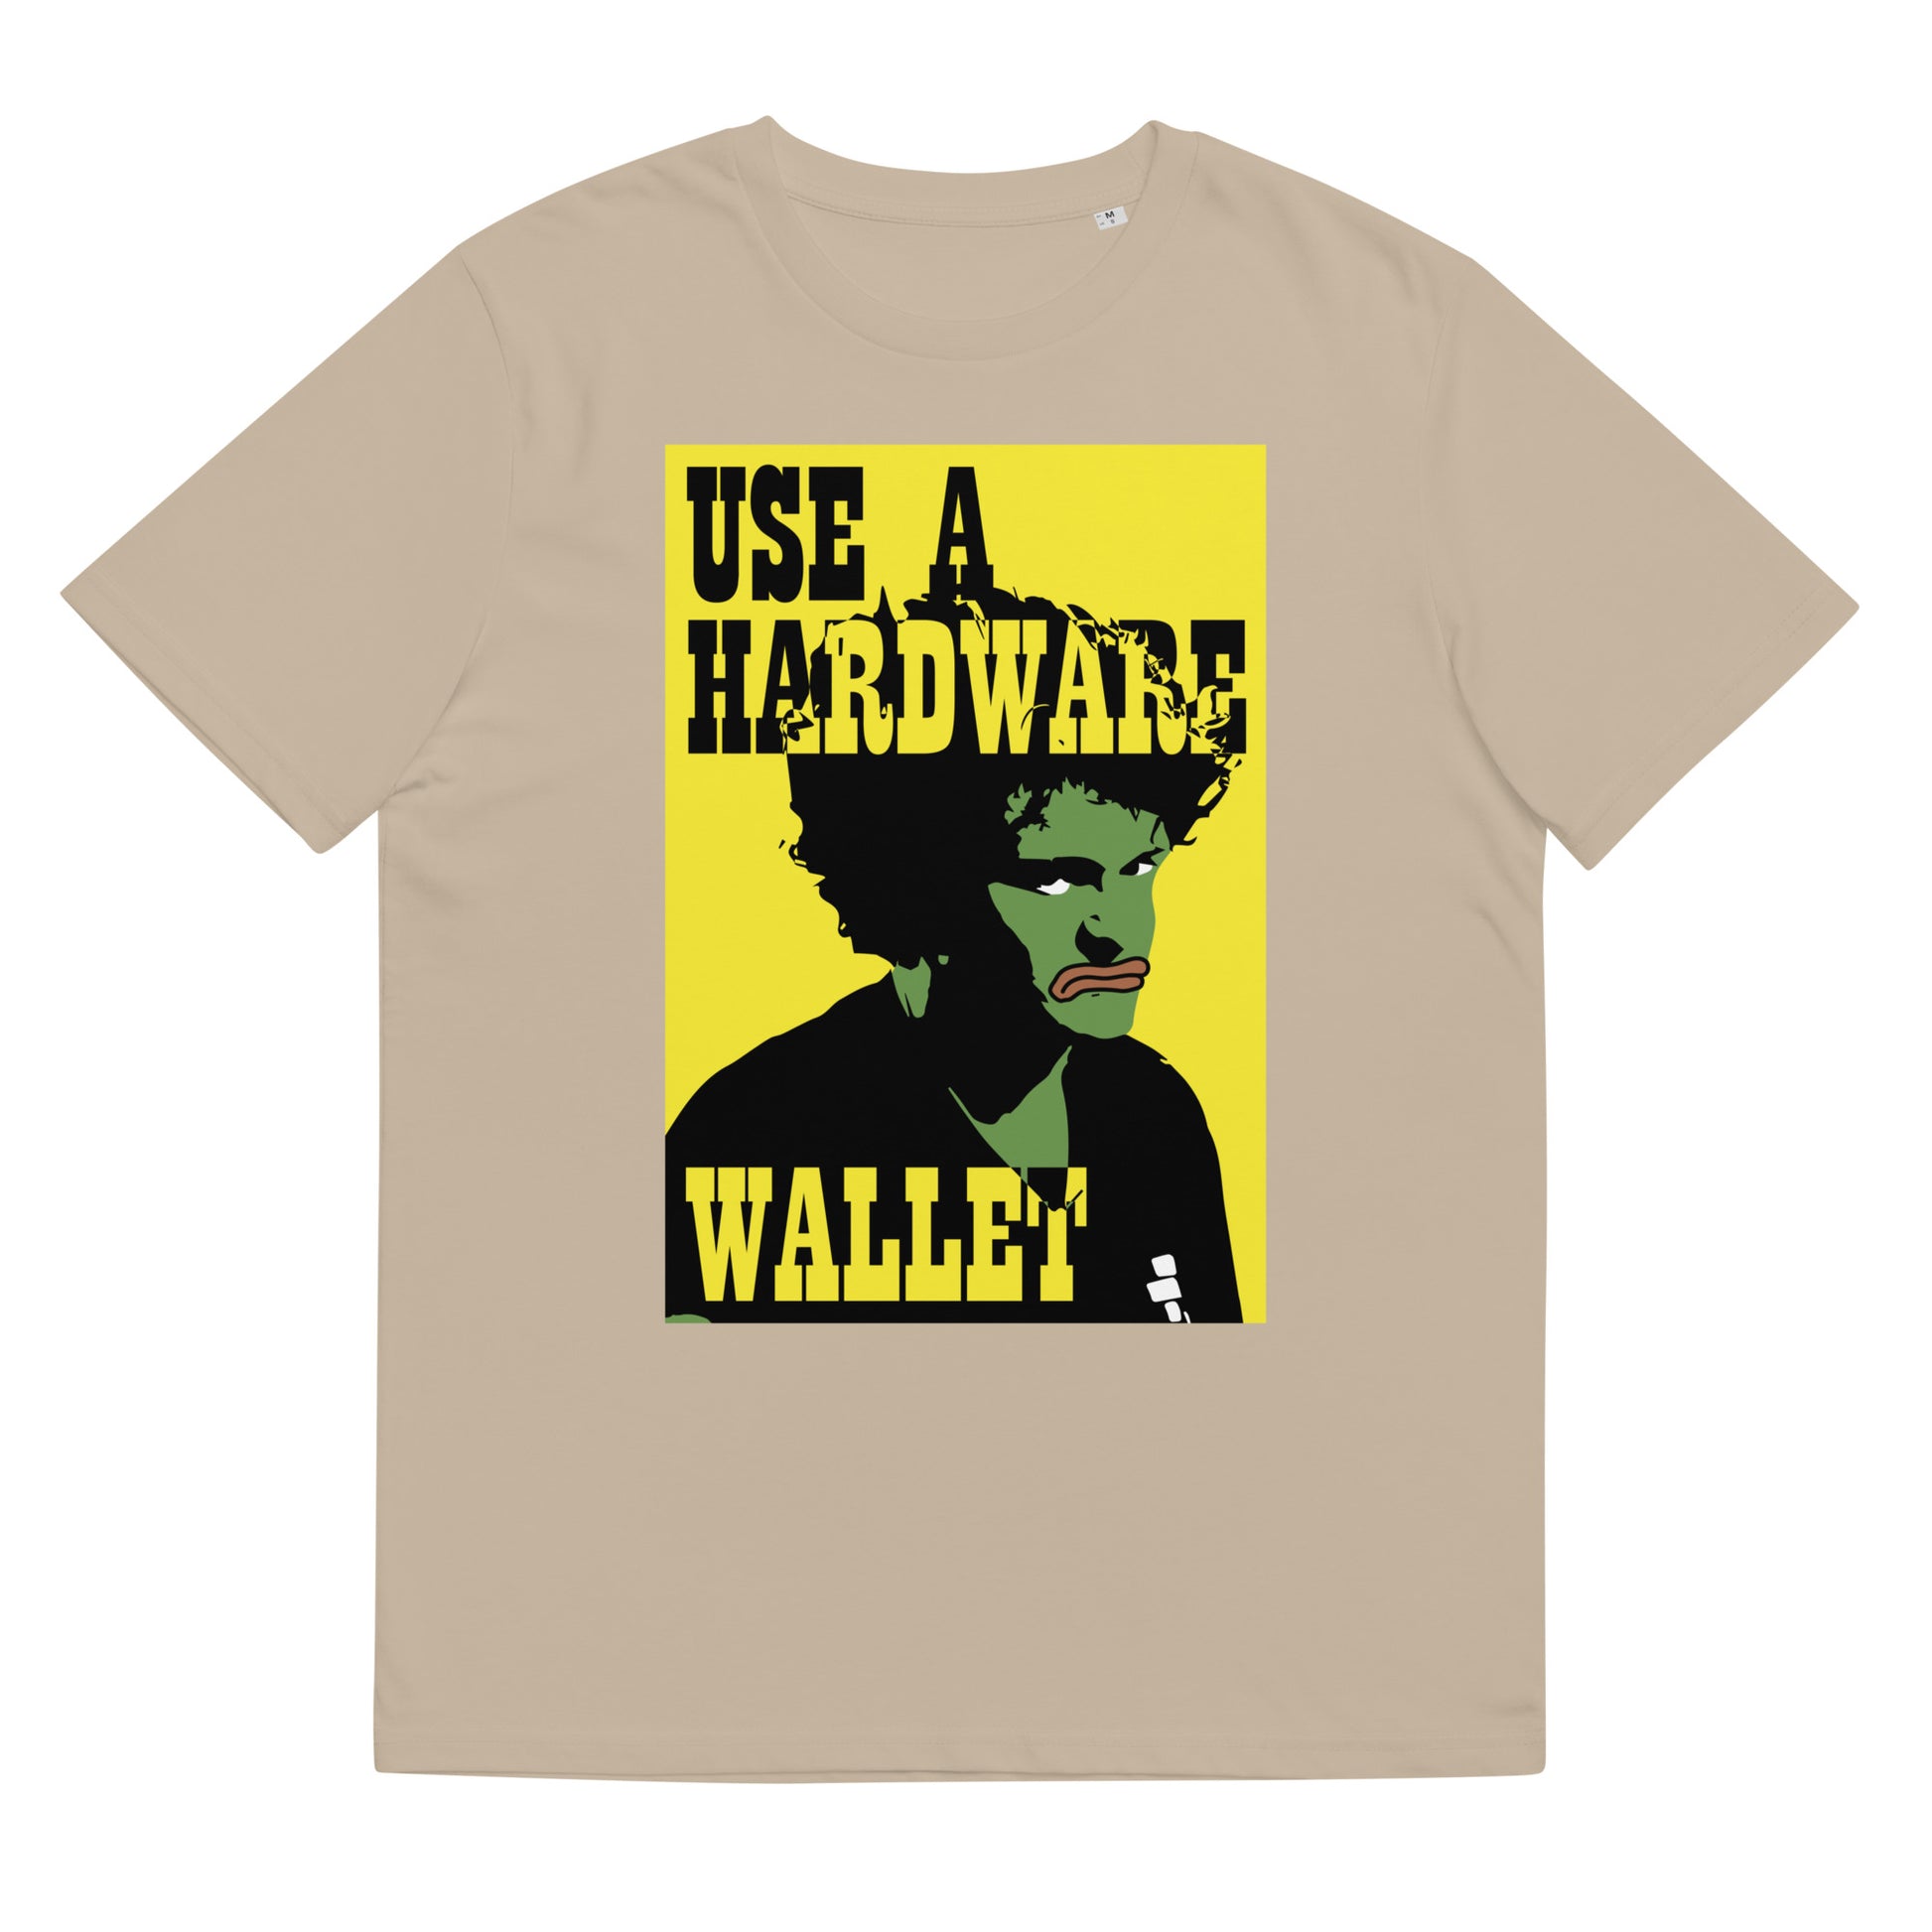 use-hardware-wallet-t-shirt-desert-dust